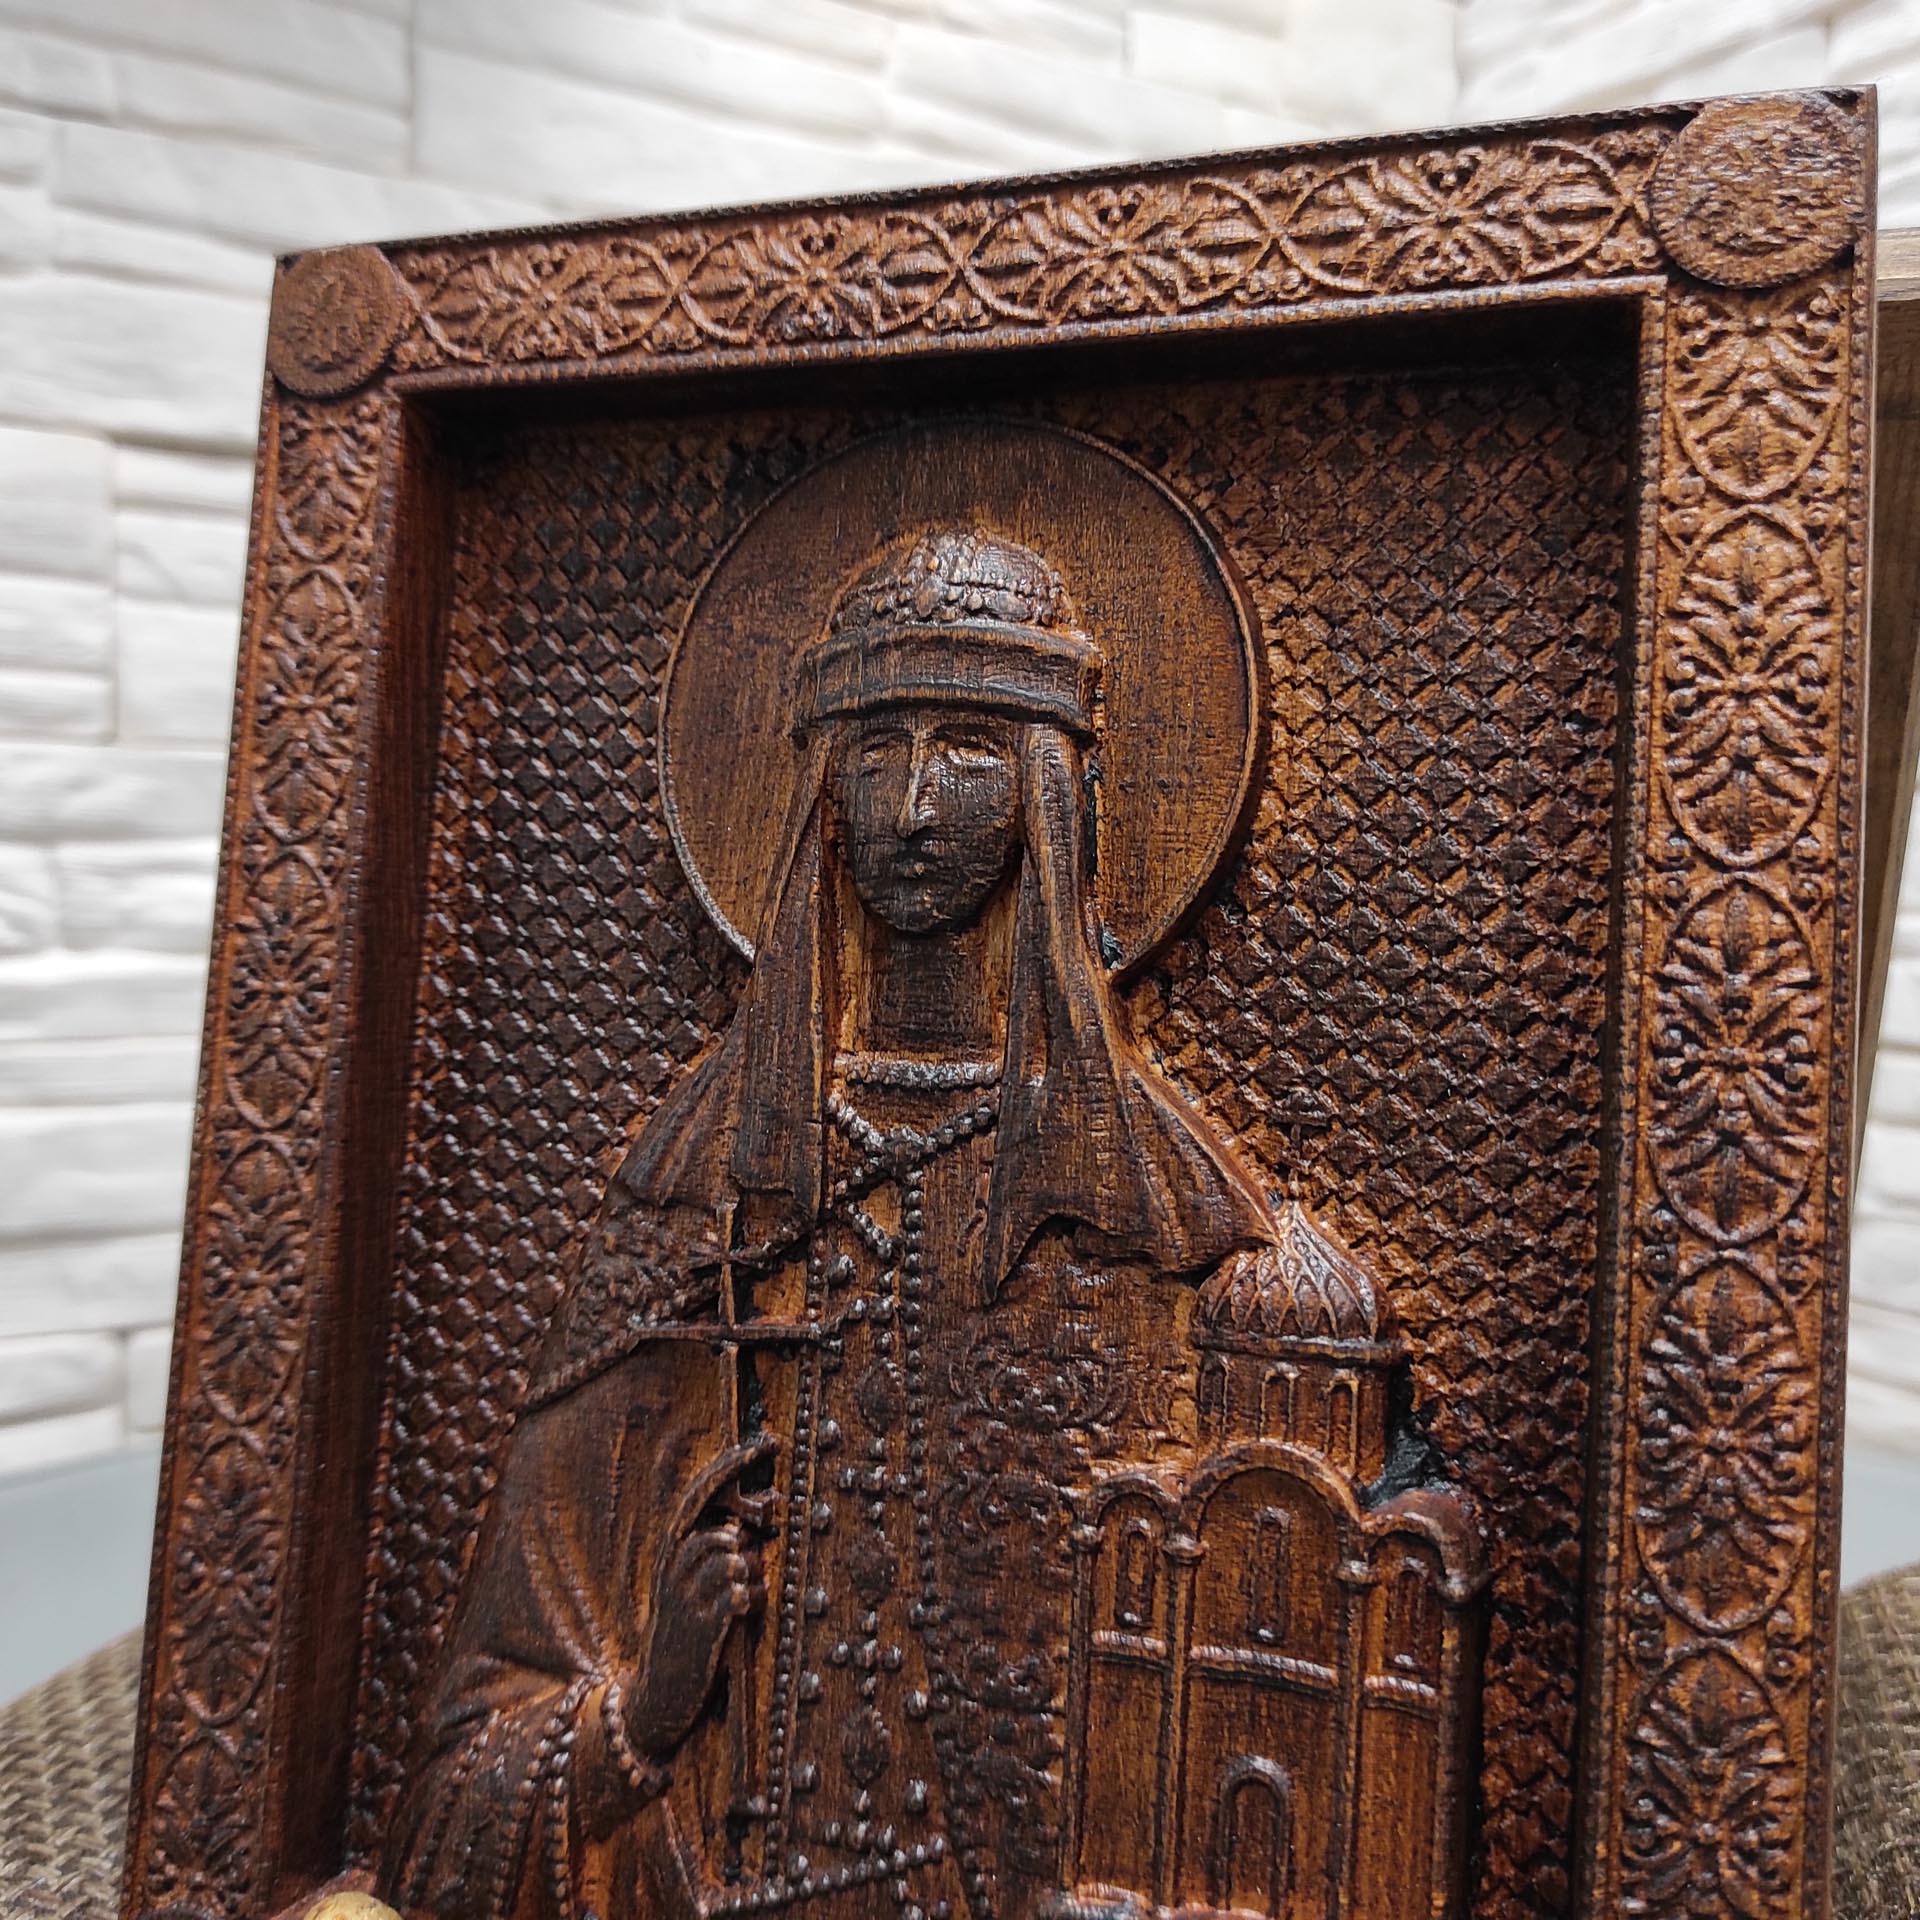 Резная икона святой равноапостольной княгини Ольги